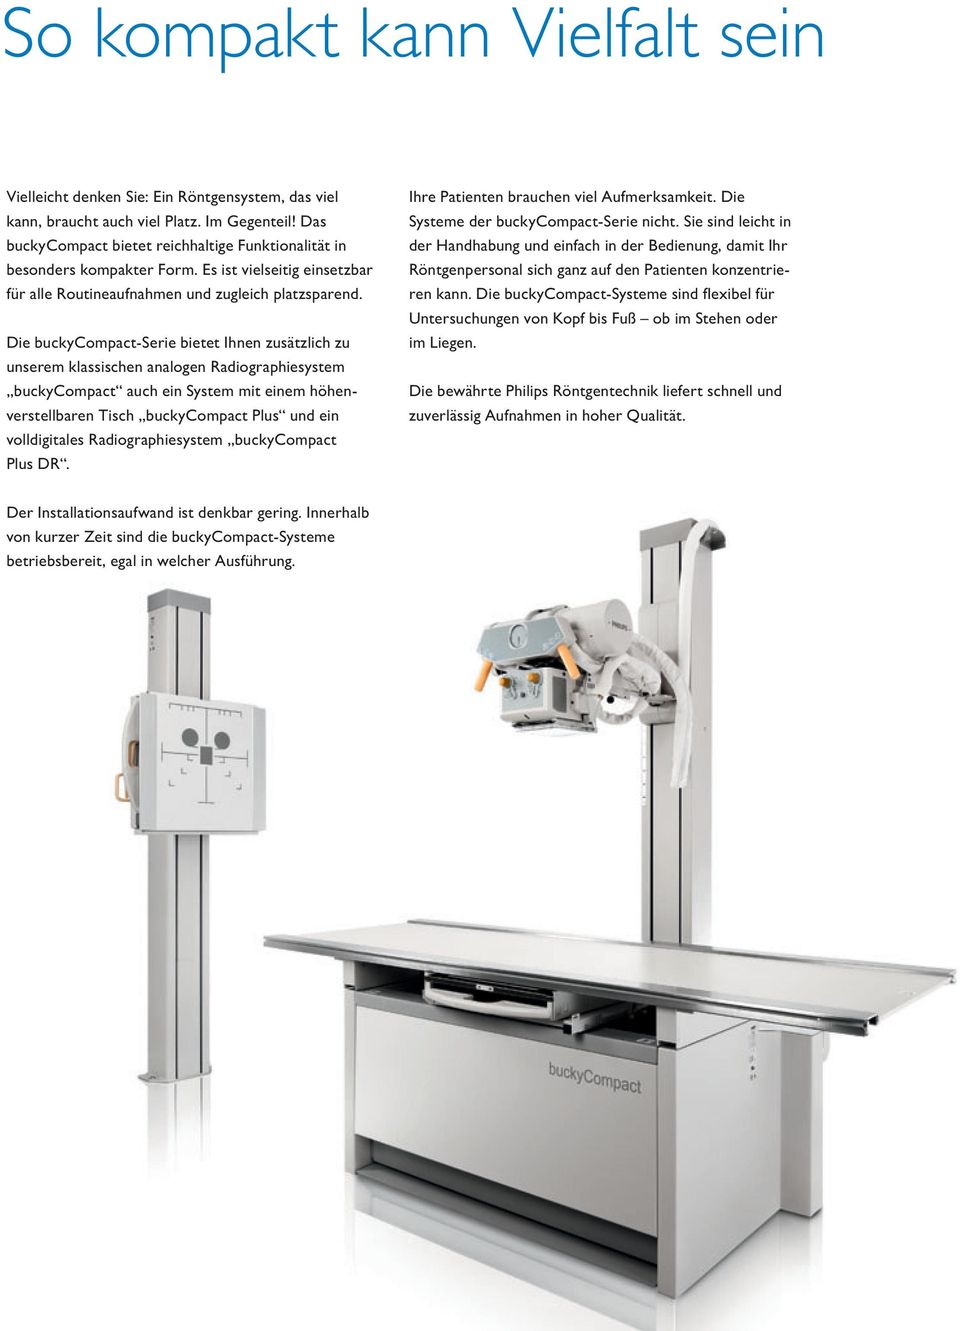 Die buckycompact-serie bietet Ihnen zusätzlich zu un serem klassischen analogen Radiographiesystem buckycompact auch ein System mit einem höhenverstellbaren Tisch buckycompact Plus und ein